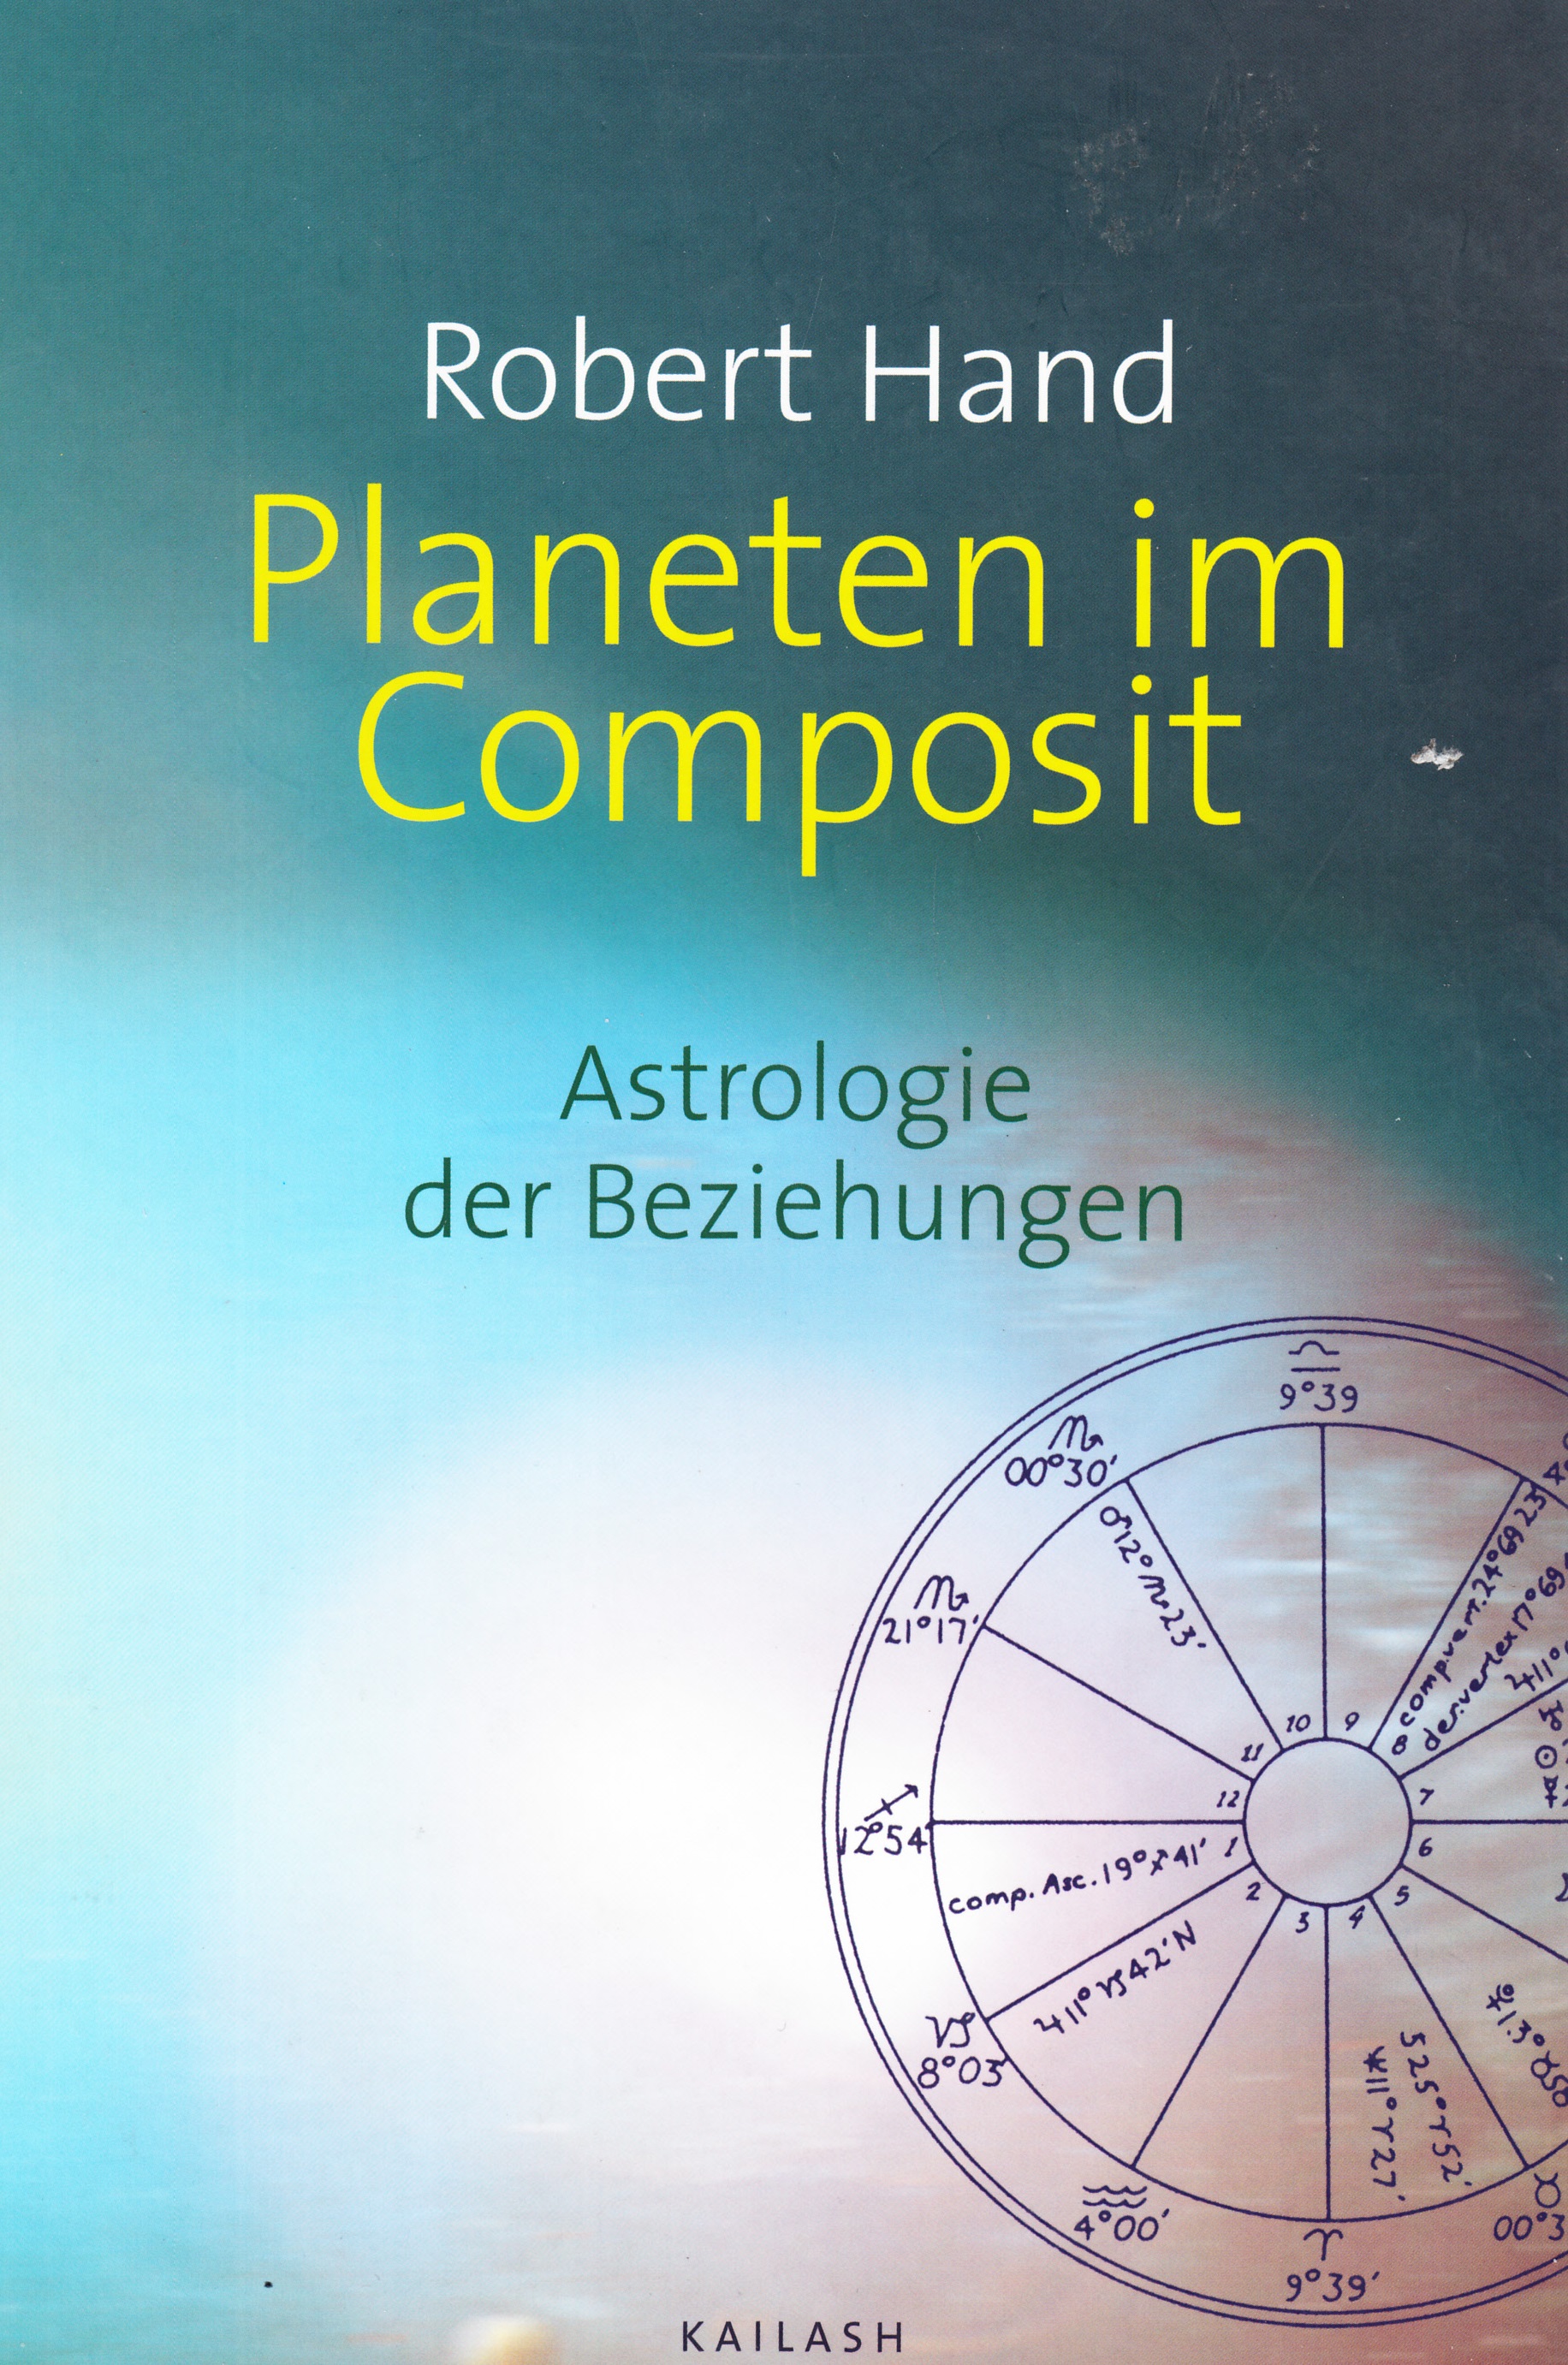 Planeten im Composit (M)